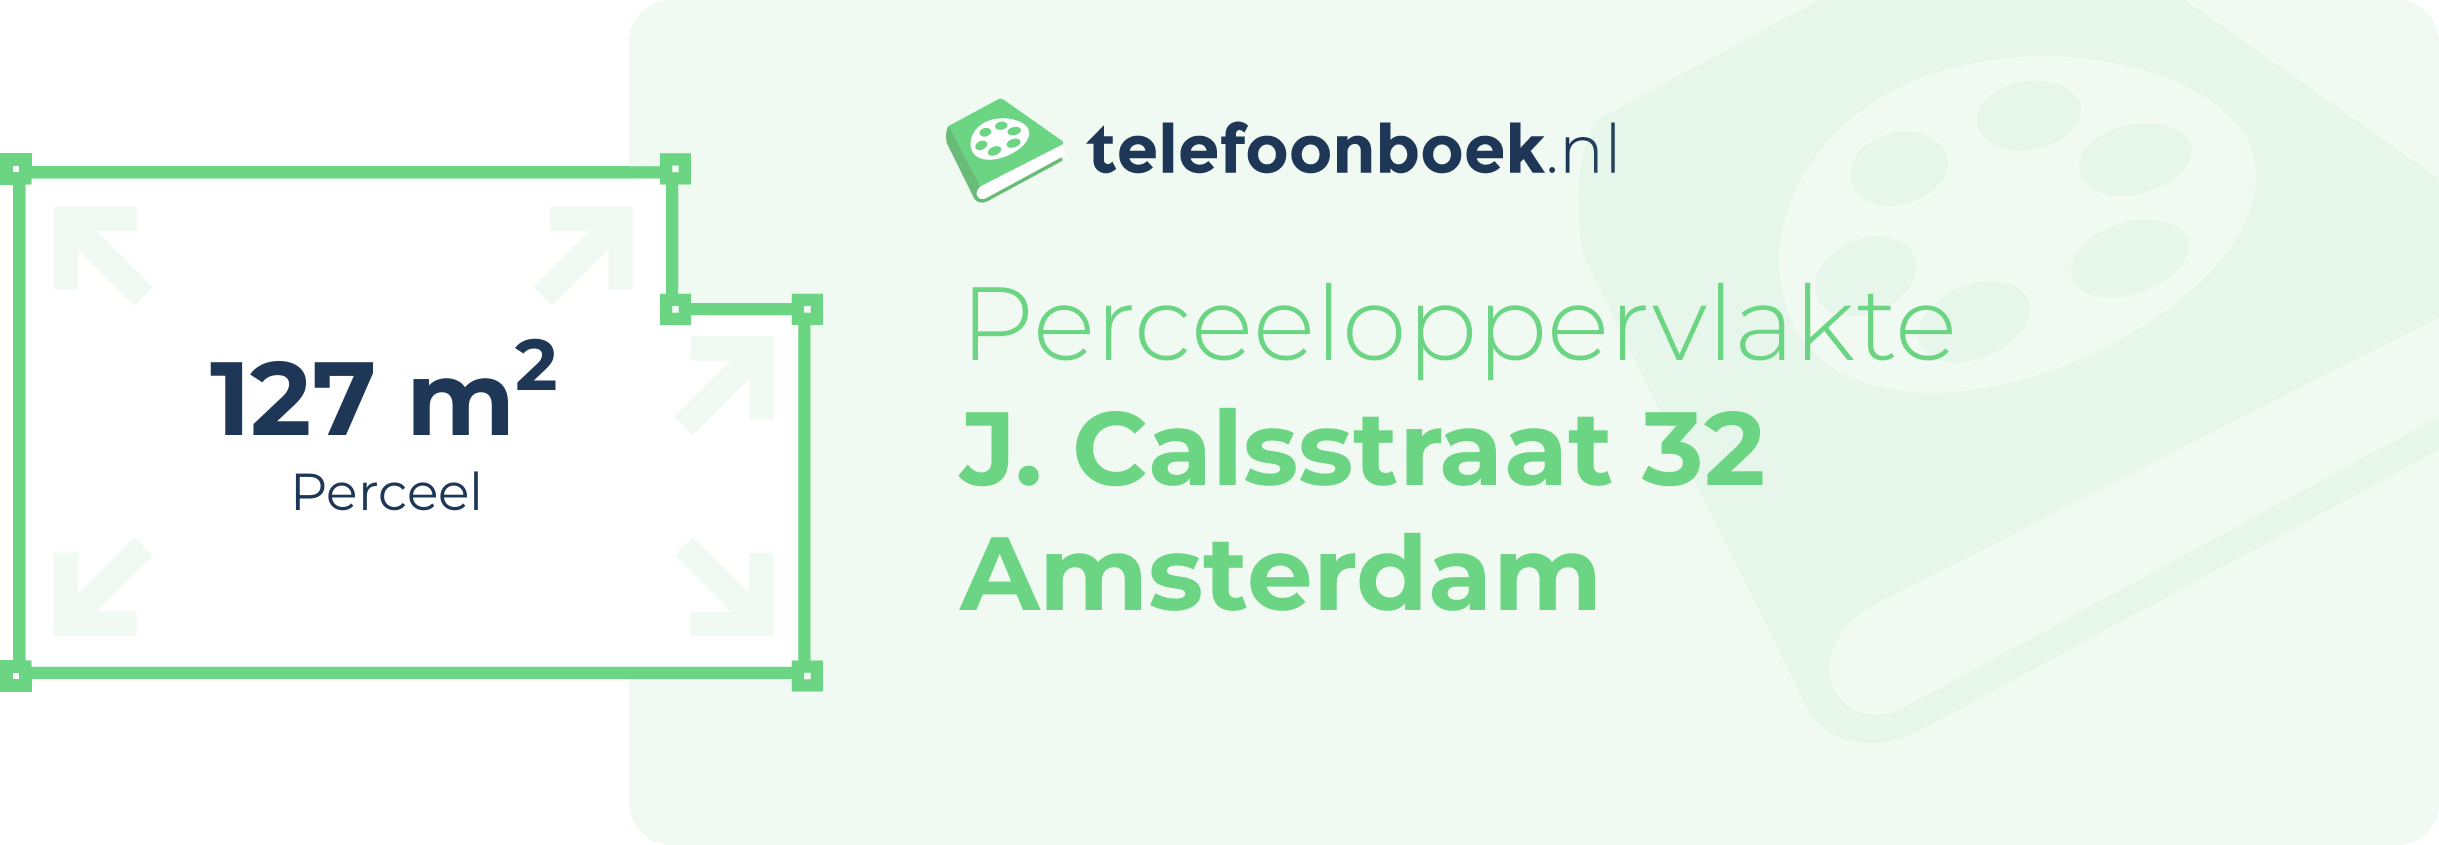 Perceeloppervlakte J. Calsstraat 32 Amsterdam